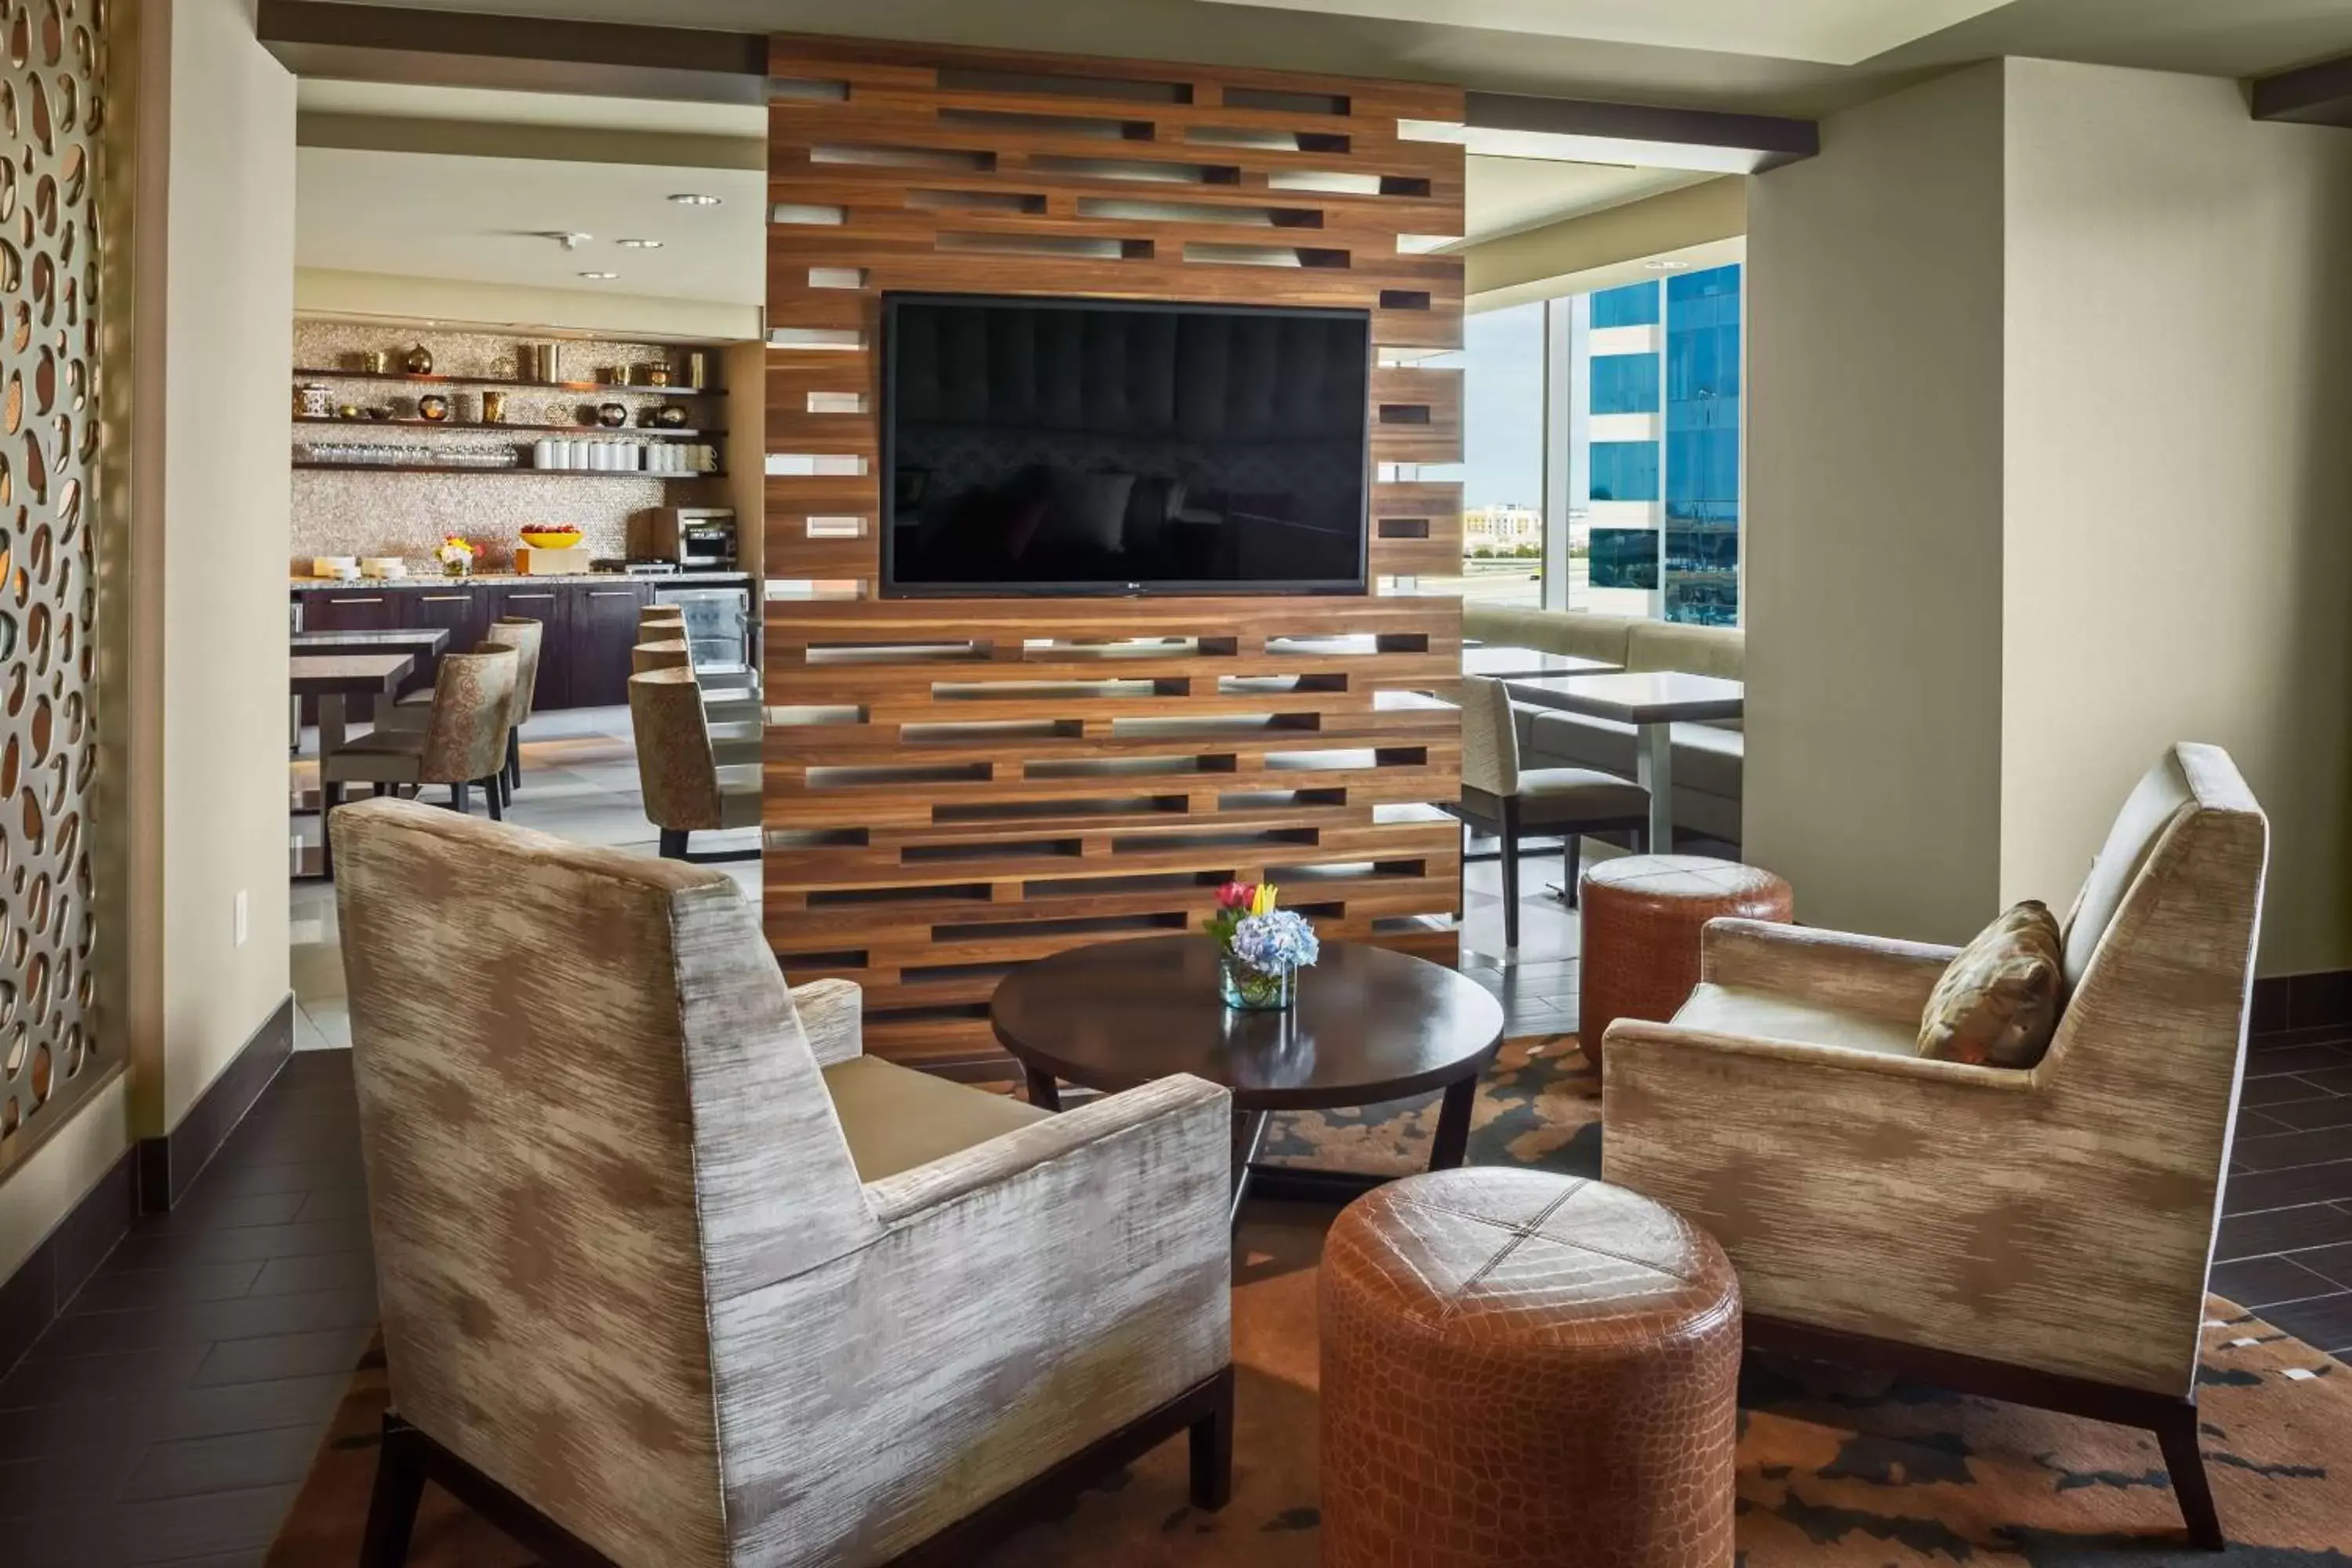 Property building, Lounge/Bar in Hilton Dallas/Plano Granite Park